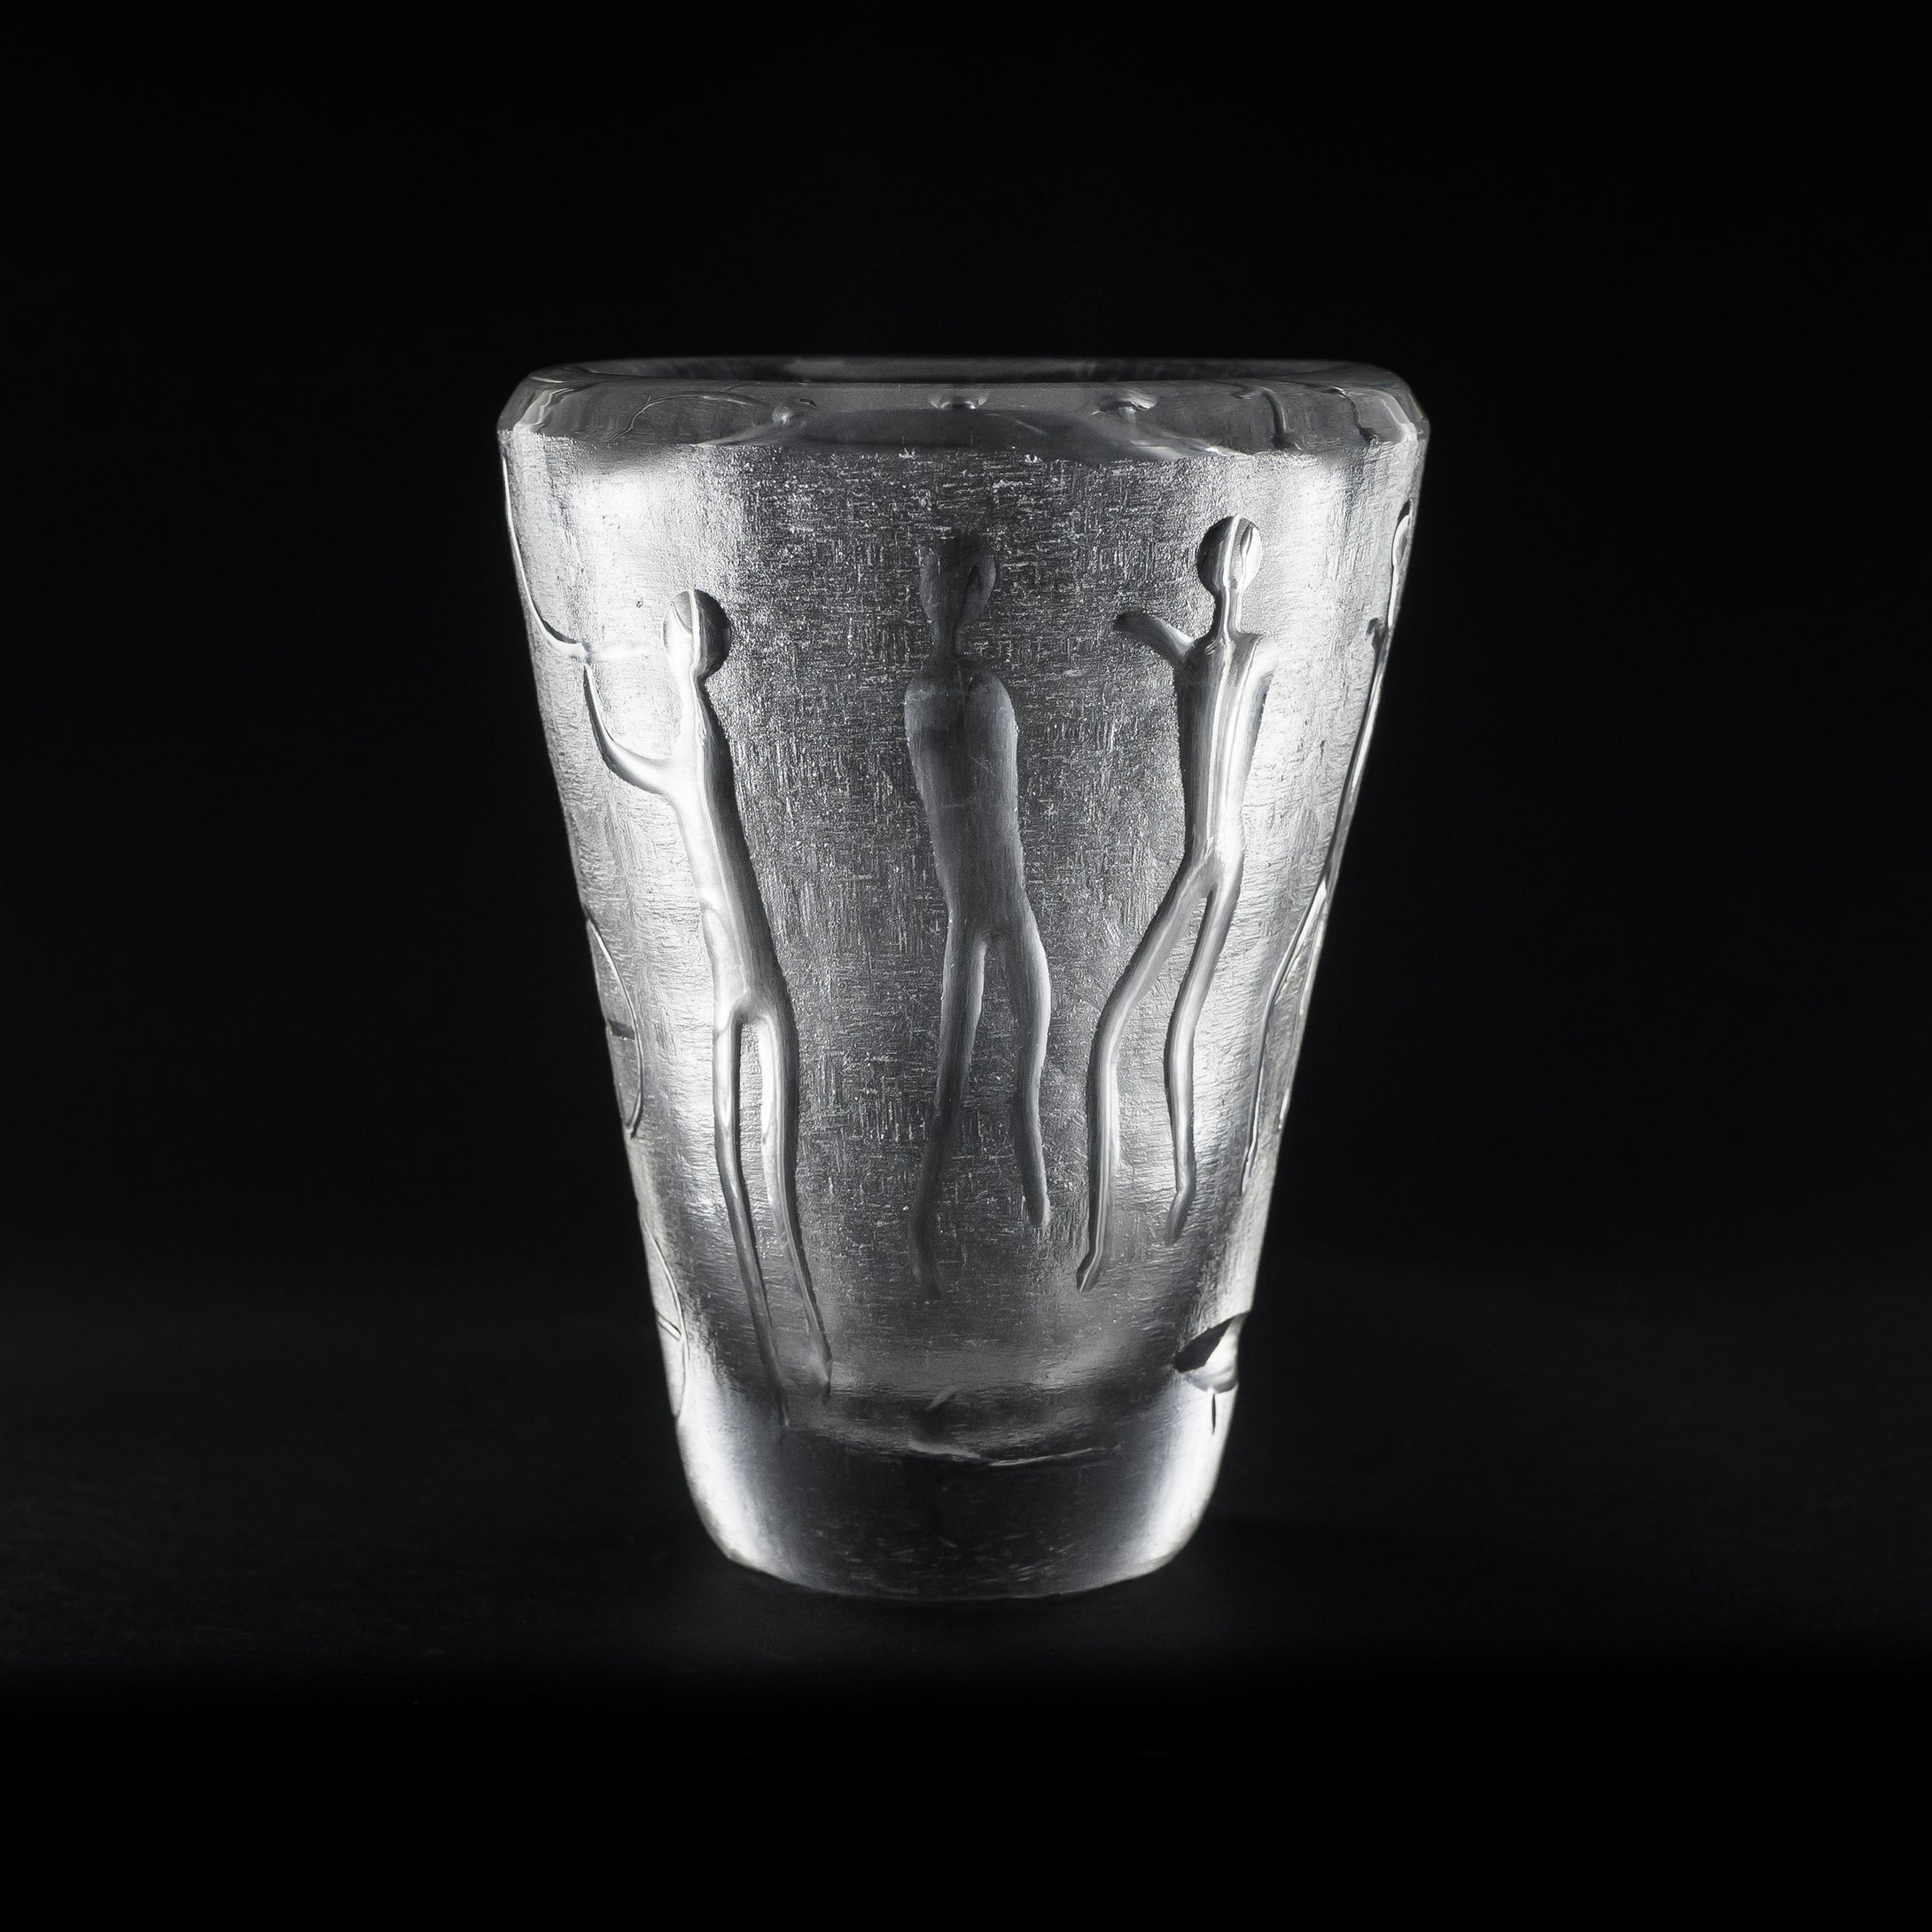 Formblåst vas från Kosta med slipade hällristningsmotiv. 1950-tal. Signerad LINDSTRAND KOSTA LS 504. 18cm hög. Kosta vase with stone age motif. H: 18cm/7,1